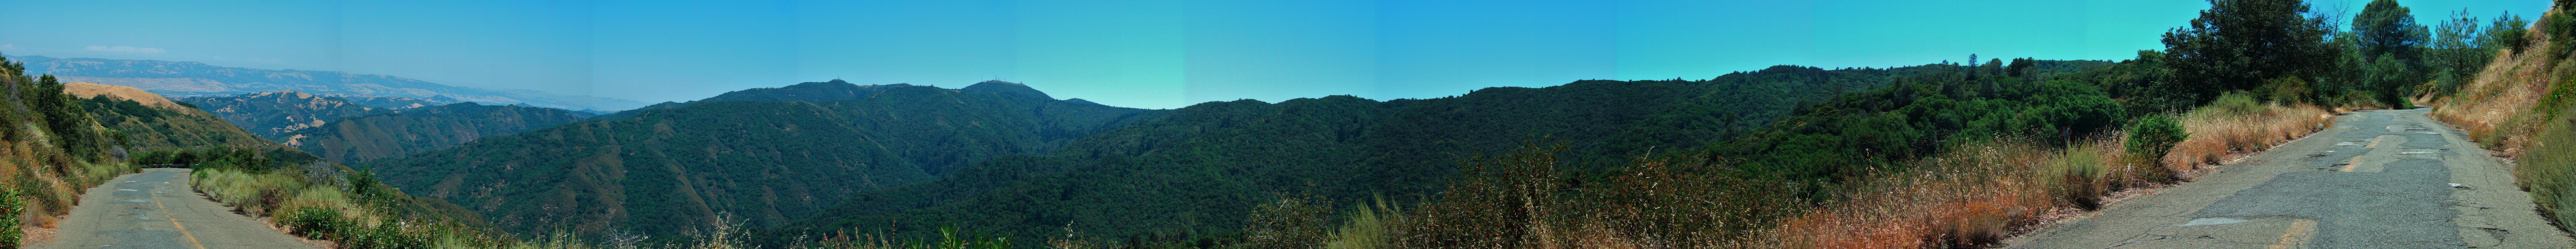 Mt. Umunhum Road Panorama 1